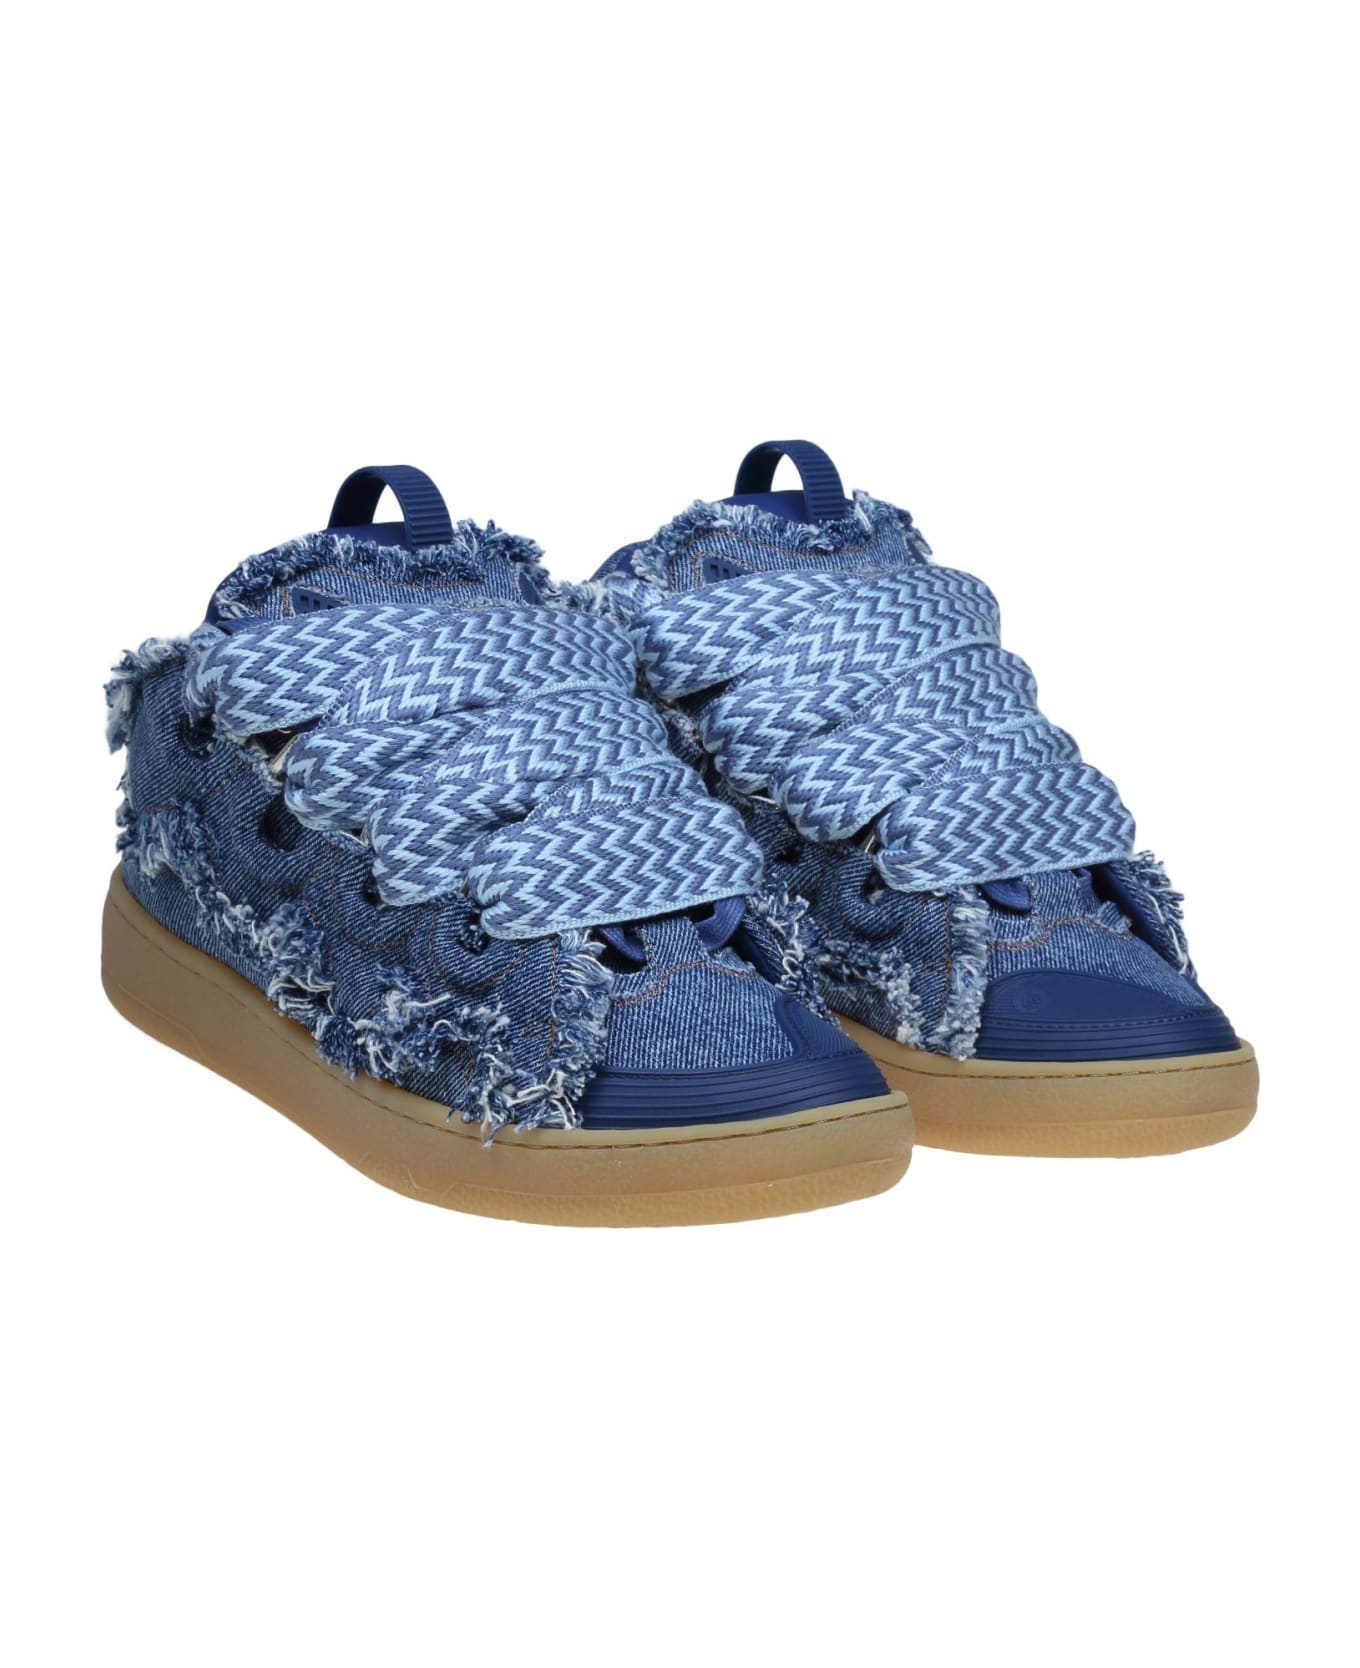 Lanvin Curb Sneakers In Blue Denim - DENIM BLUE